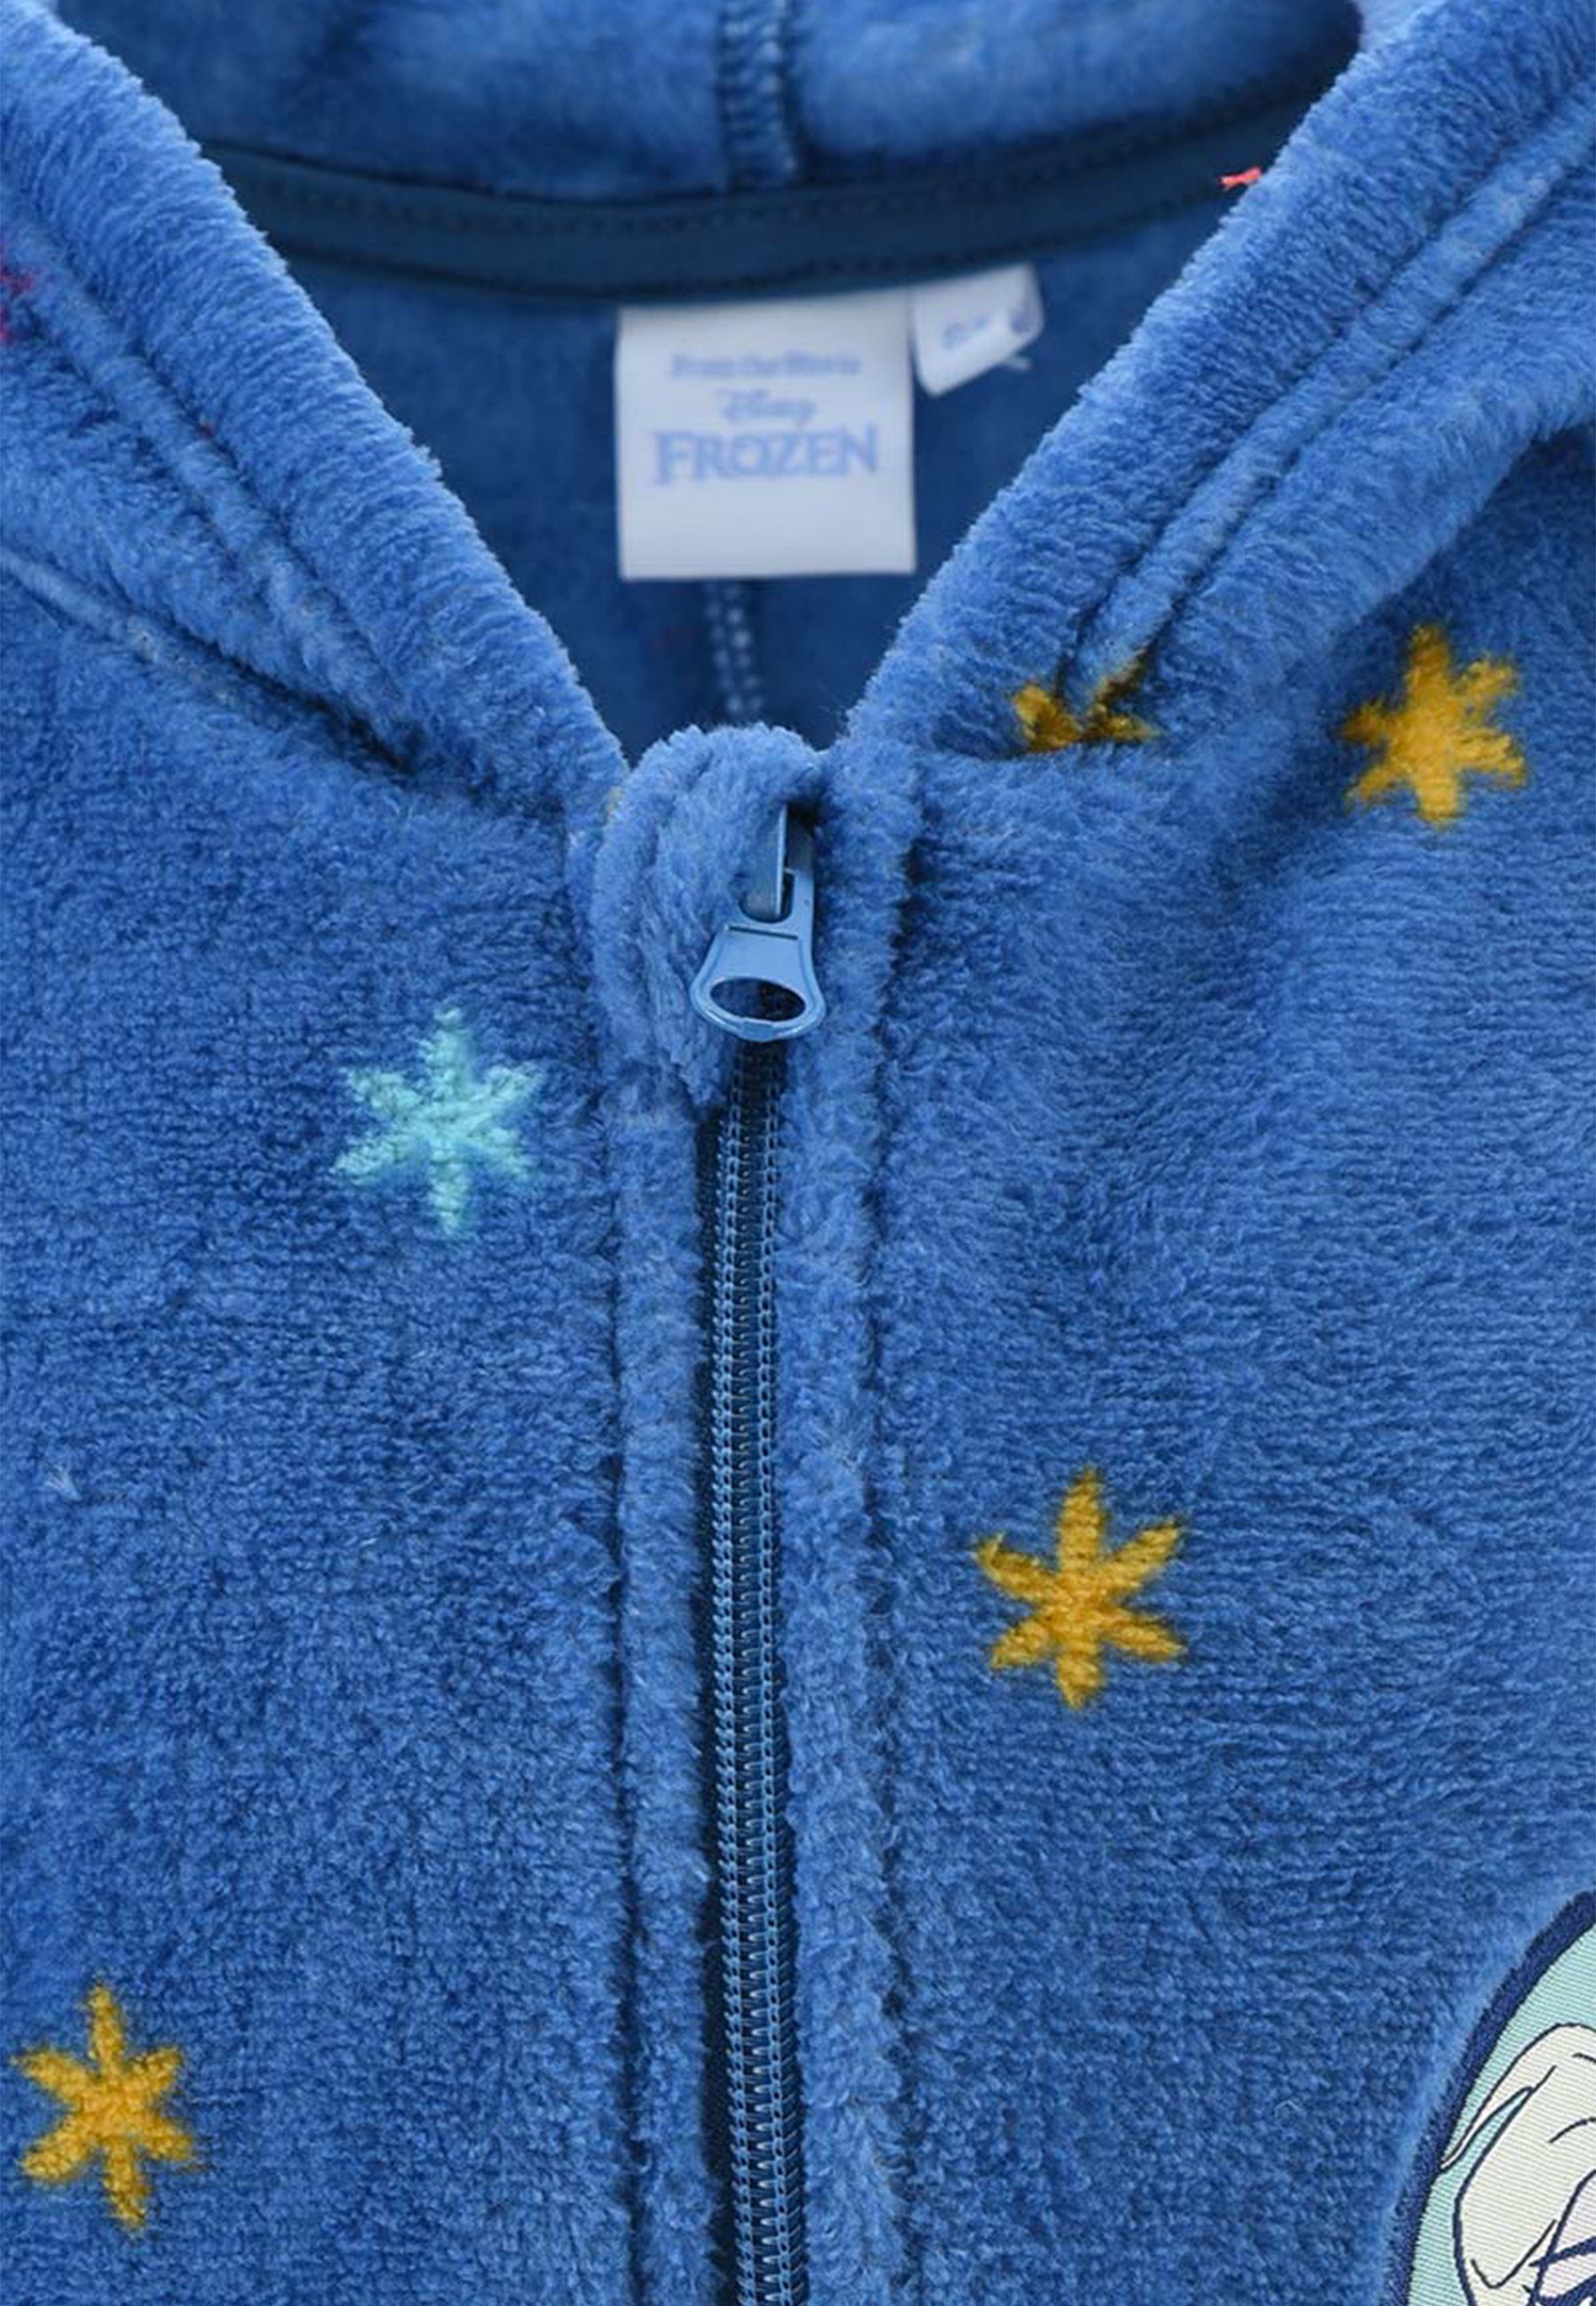 Pyjama Nachtwäsche Frozen langarm Schlaf Elsa Disney Overall Schlafanzug